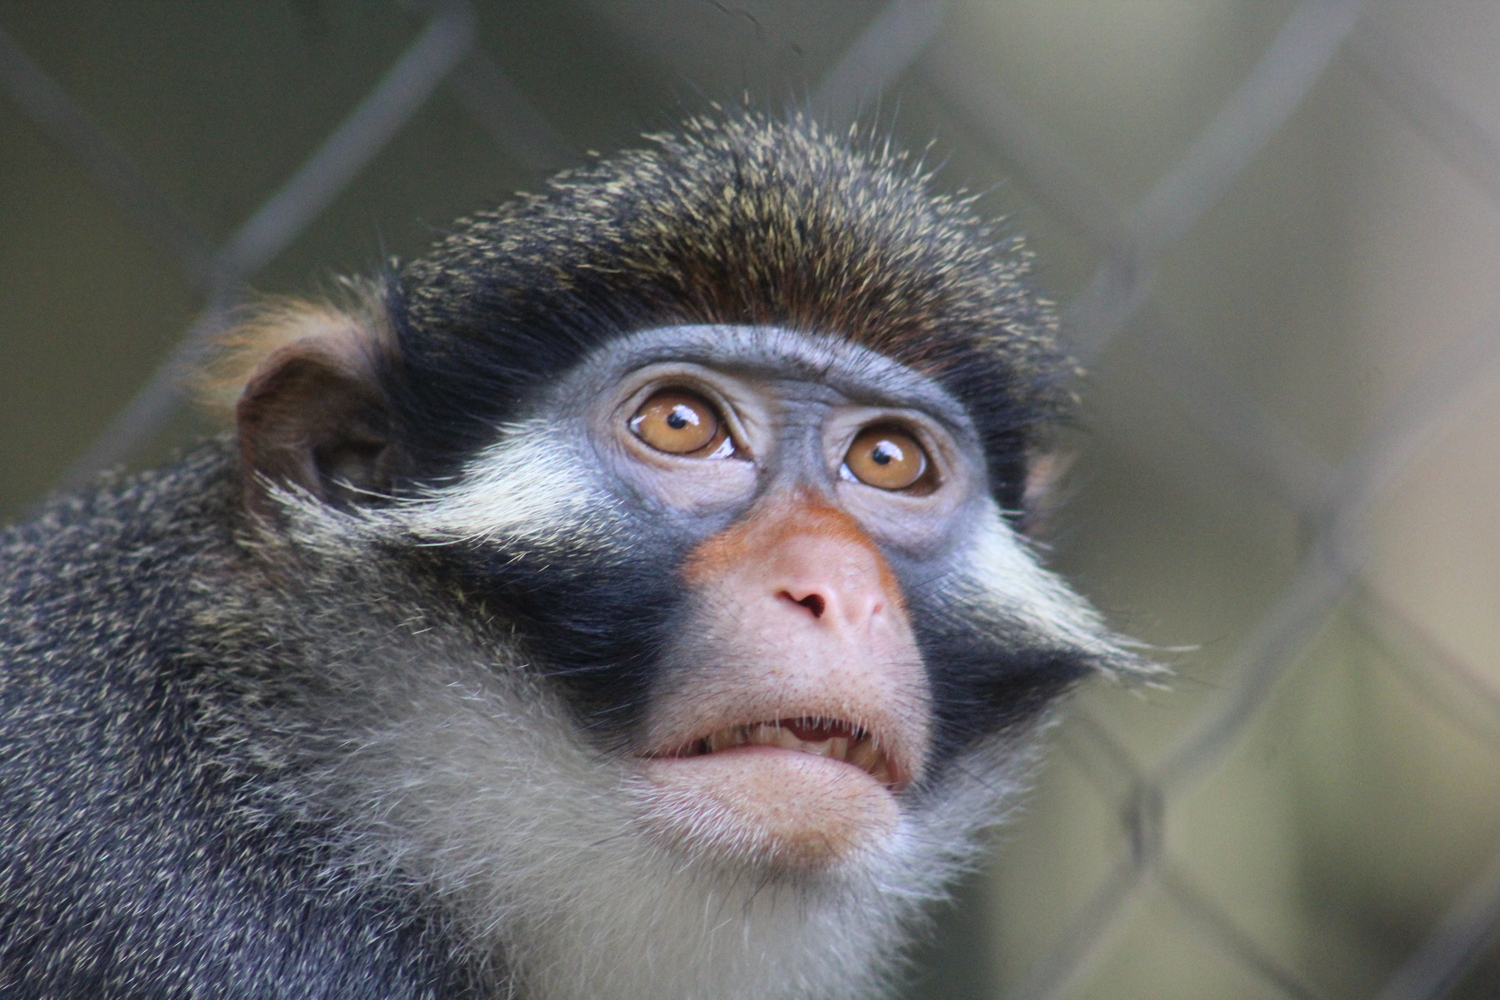 Le sanctuaire essaie de remettre les animaux en liberté, une mission difficile pour les primates © Limbé Wildlife Center